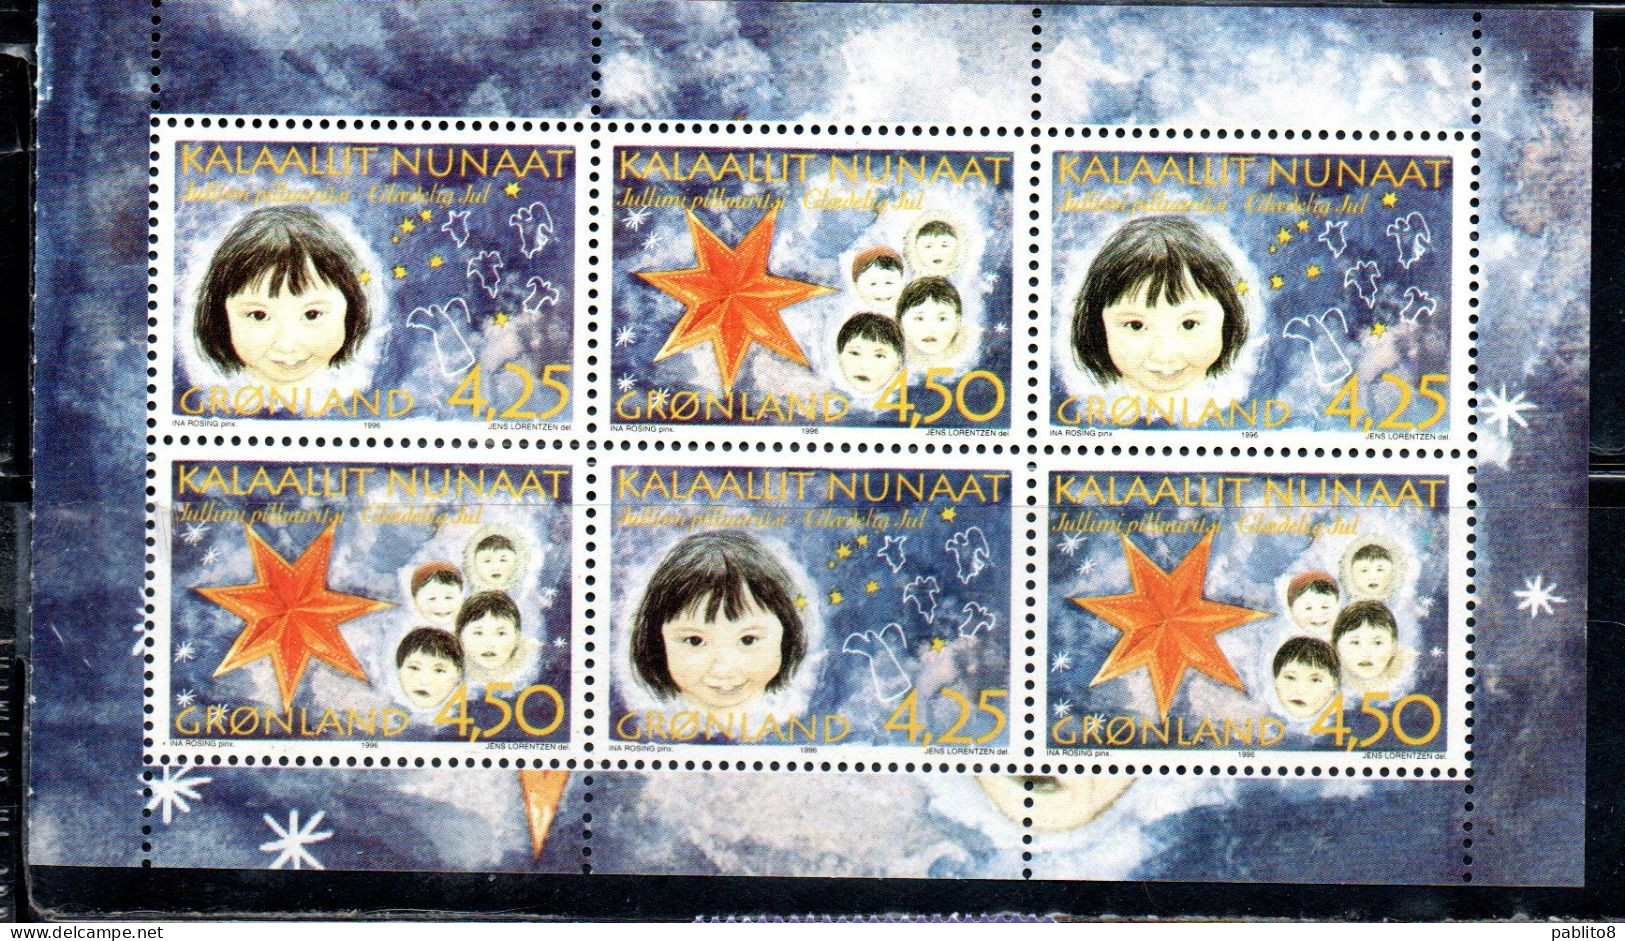 GREENLAND GRONLANDS GROENLANDIA GRØNLAND 1996 CHRISTMAS WEIHNACHTEN NATALE NOEL NAVIDAD BLOCK SHEET MNH - Unused Stamps